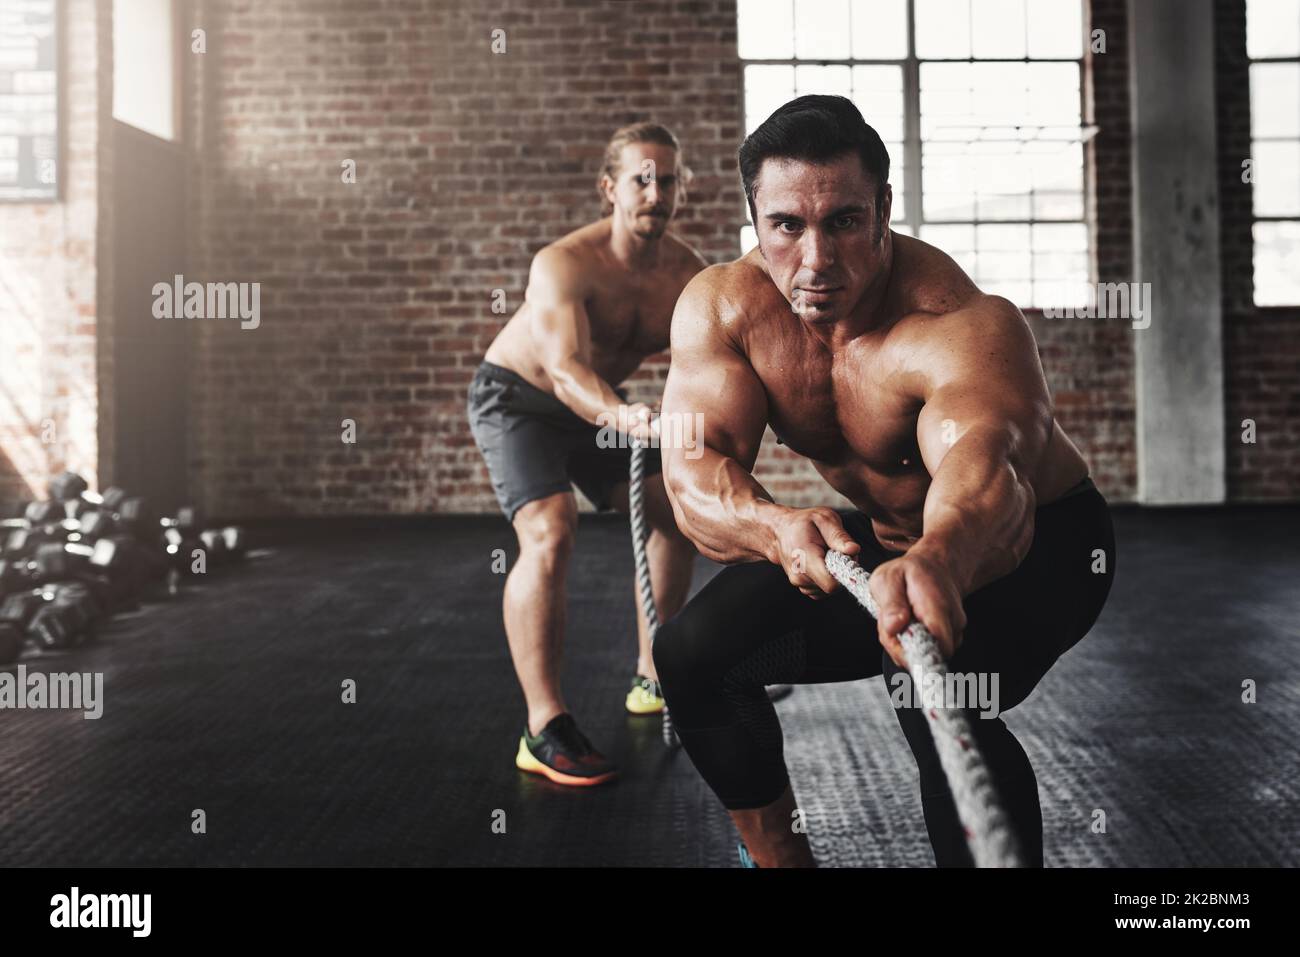 So sieht fit und wild aus. Aufnahme von zwei muskulösen jungen Männern, die in einem Fitnessstudio an einem Seil ziehen. Stockfoto